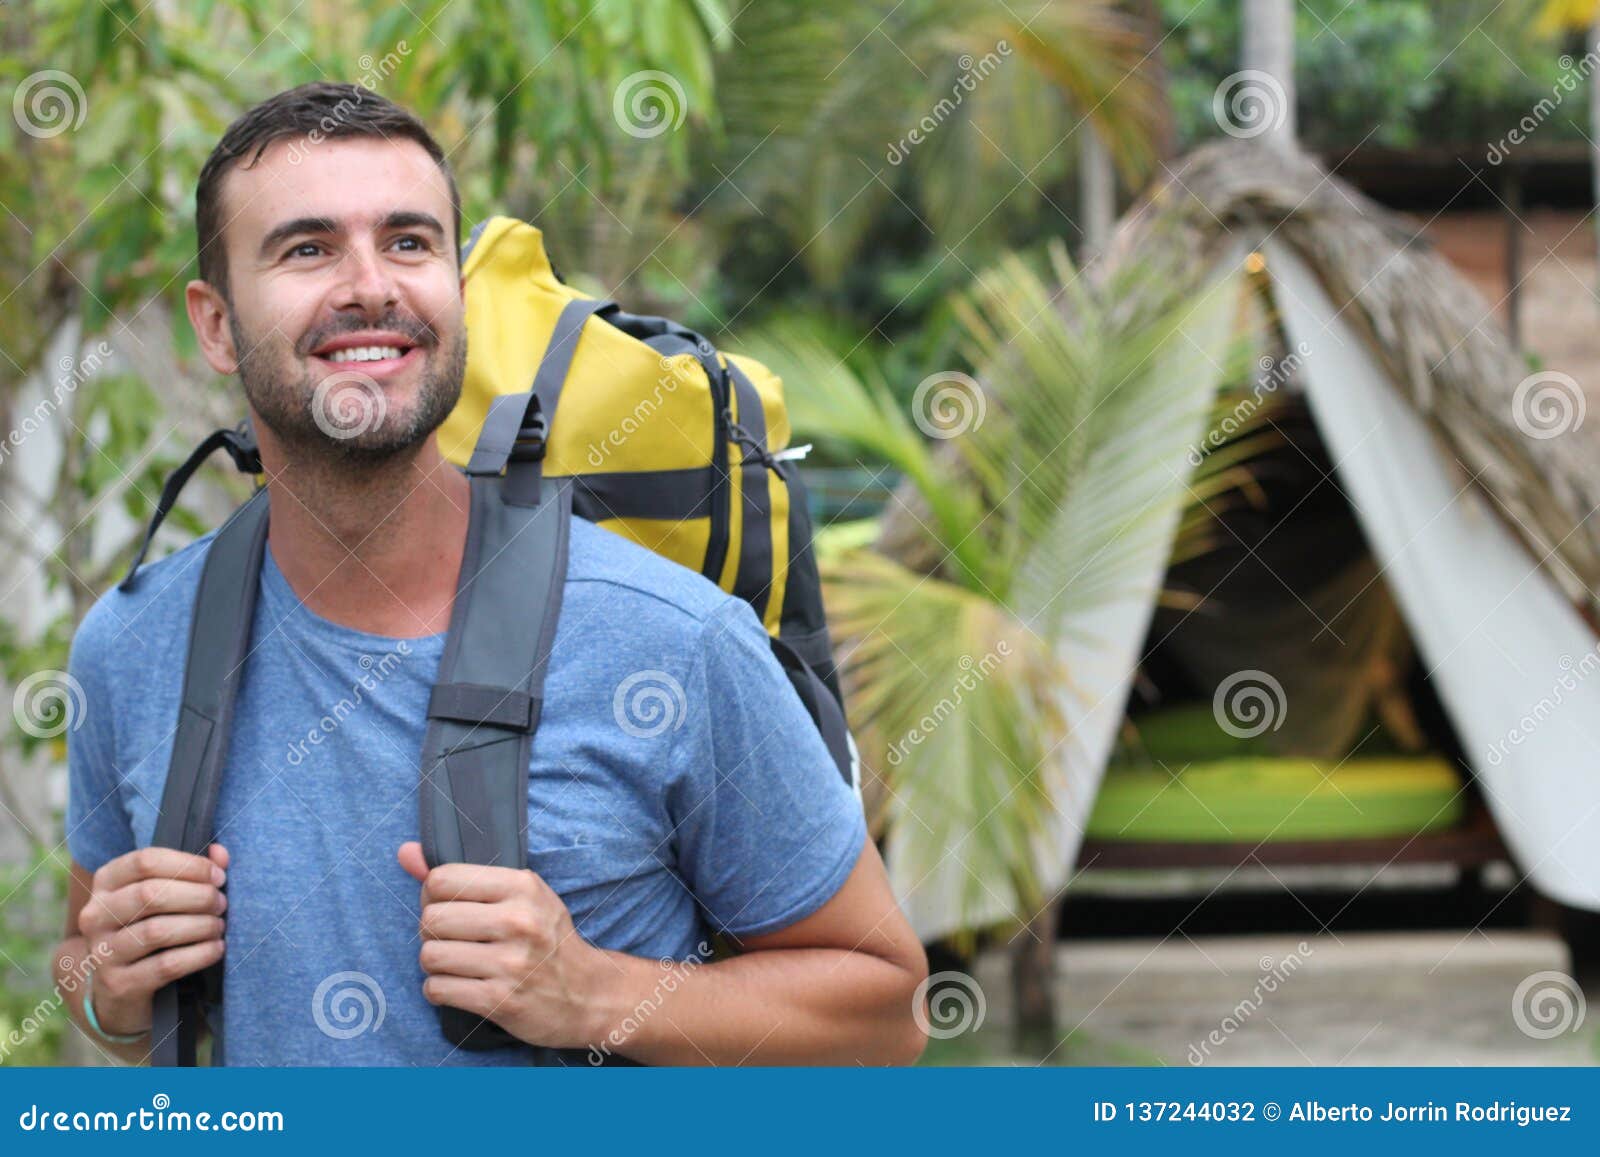 man enjoying ecotourism in south america